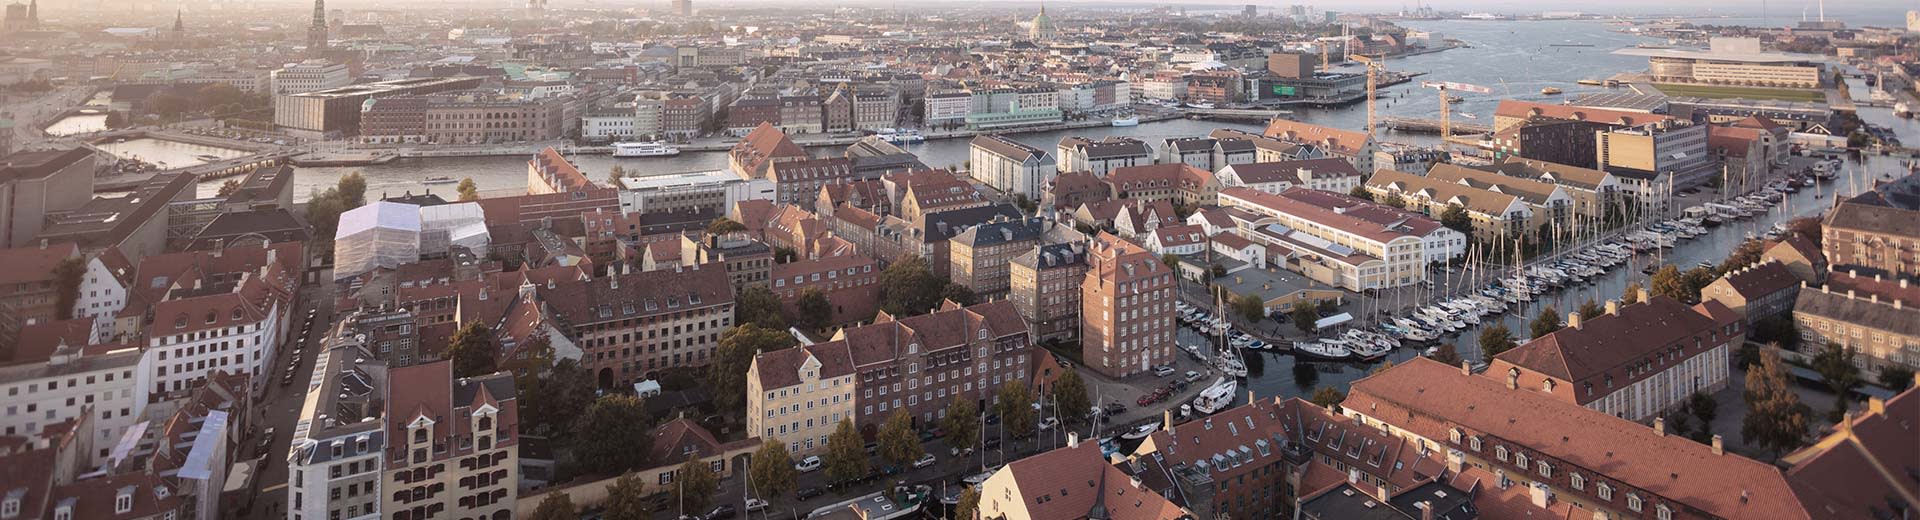 寒く晴れた日の美しく歴史的なコペンハーゲンの街並み。